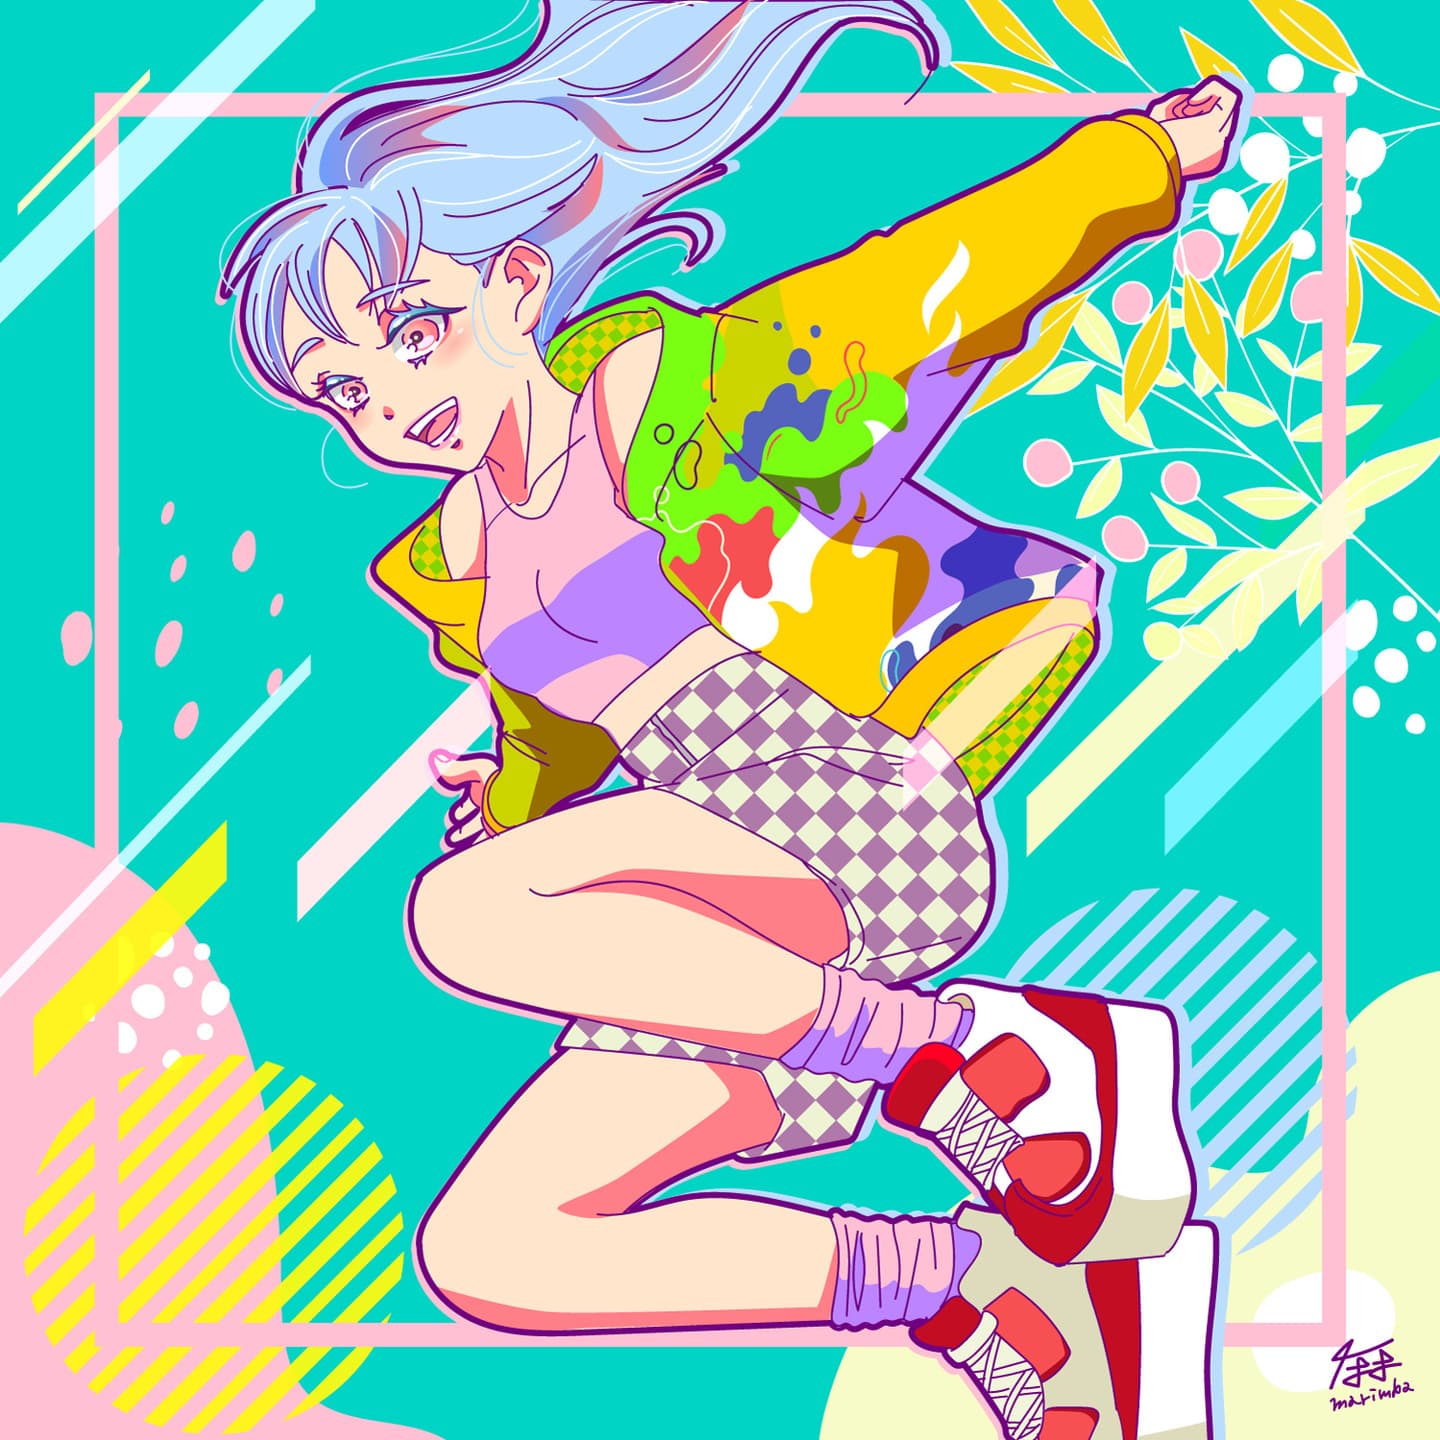 Rin/Marimba's Illustration